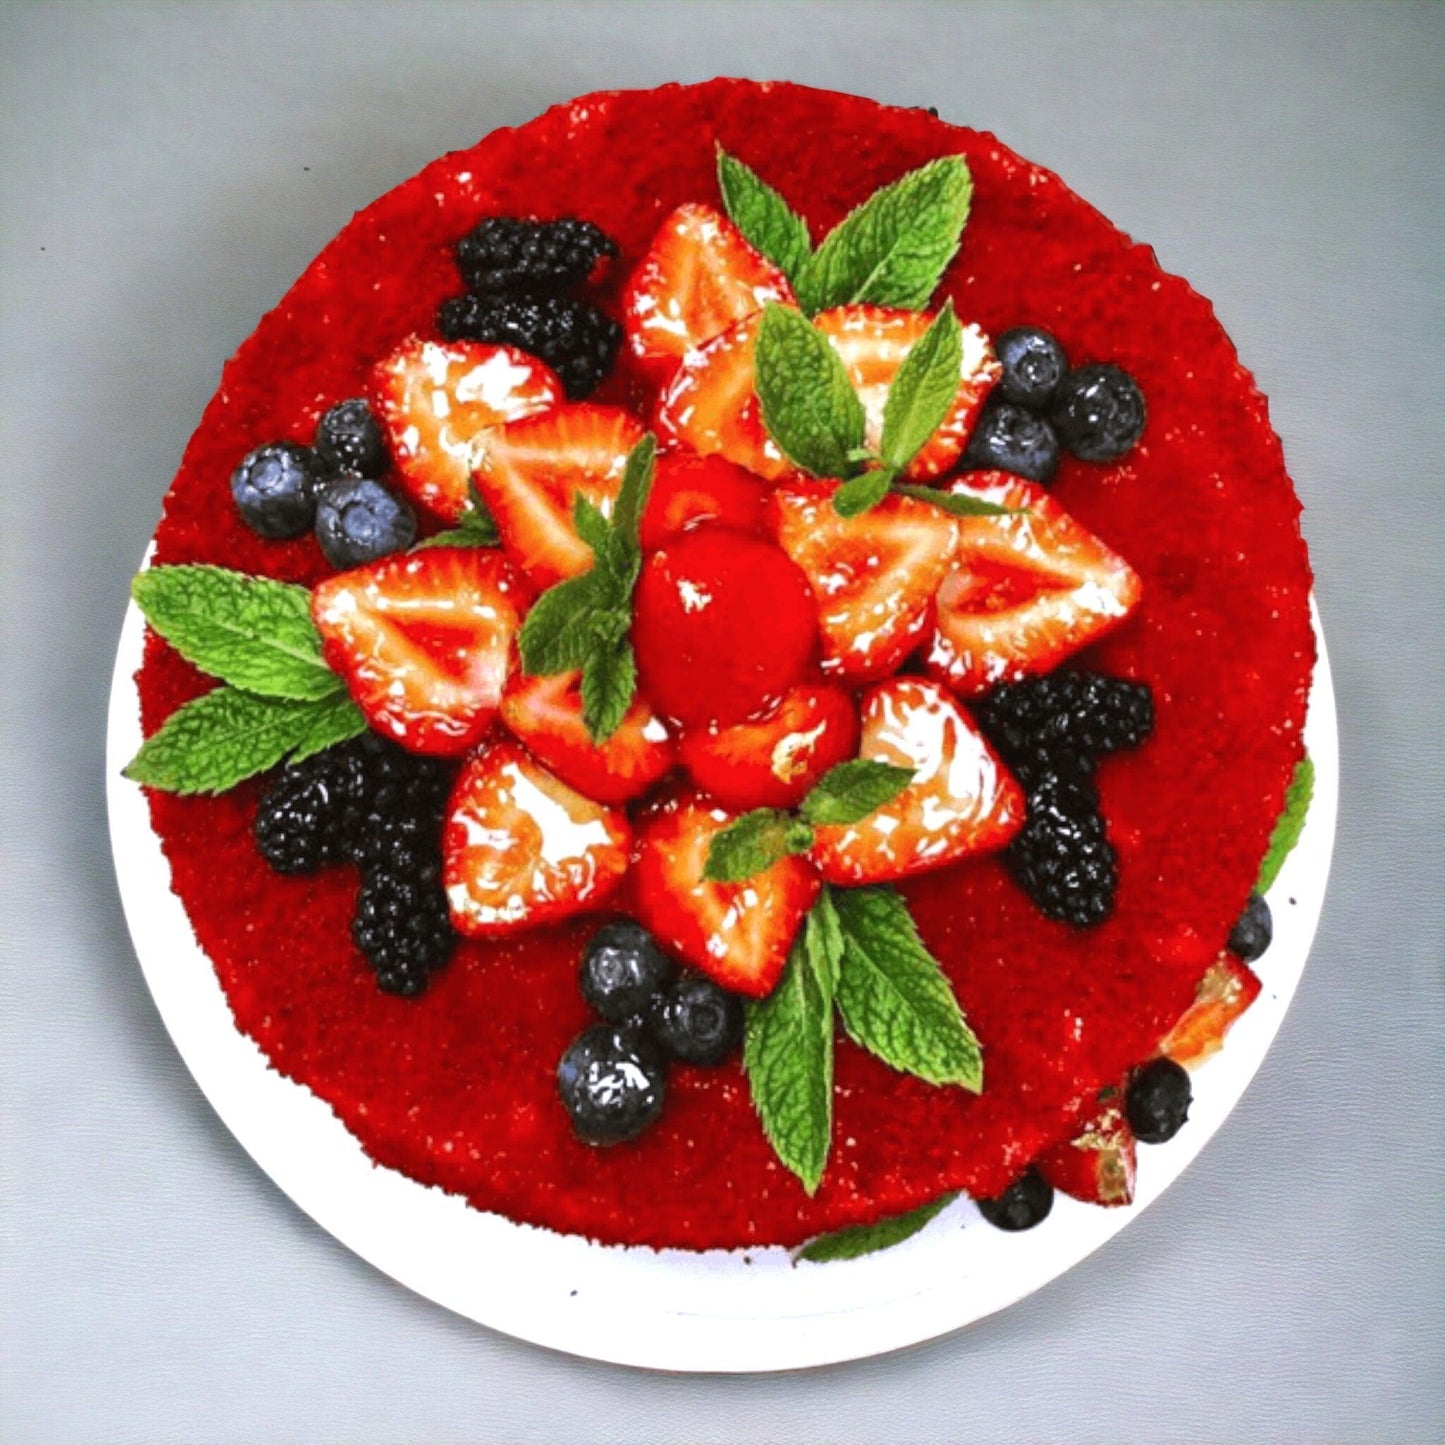 RED VELVET CAKE - Naturally_deliciousss